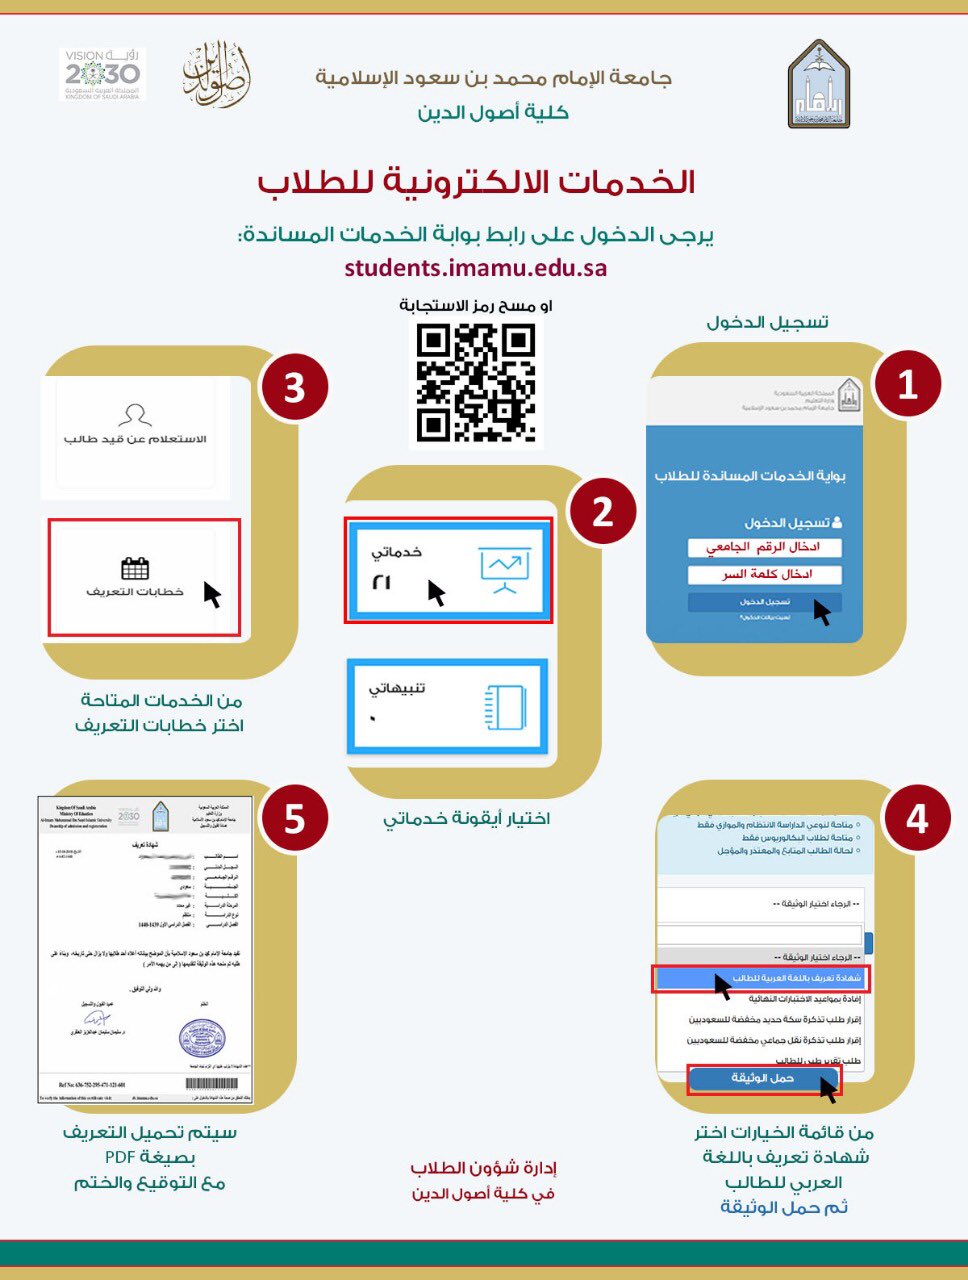 جامعة الملك سعود بوابة خدماتي موعد التسجيل